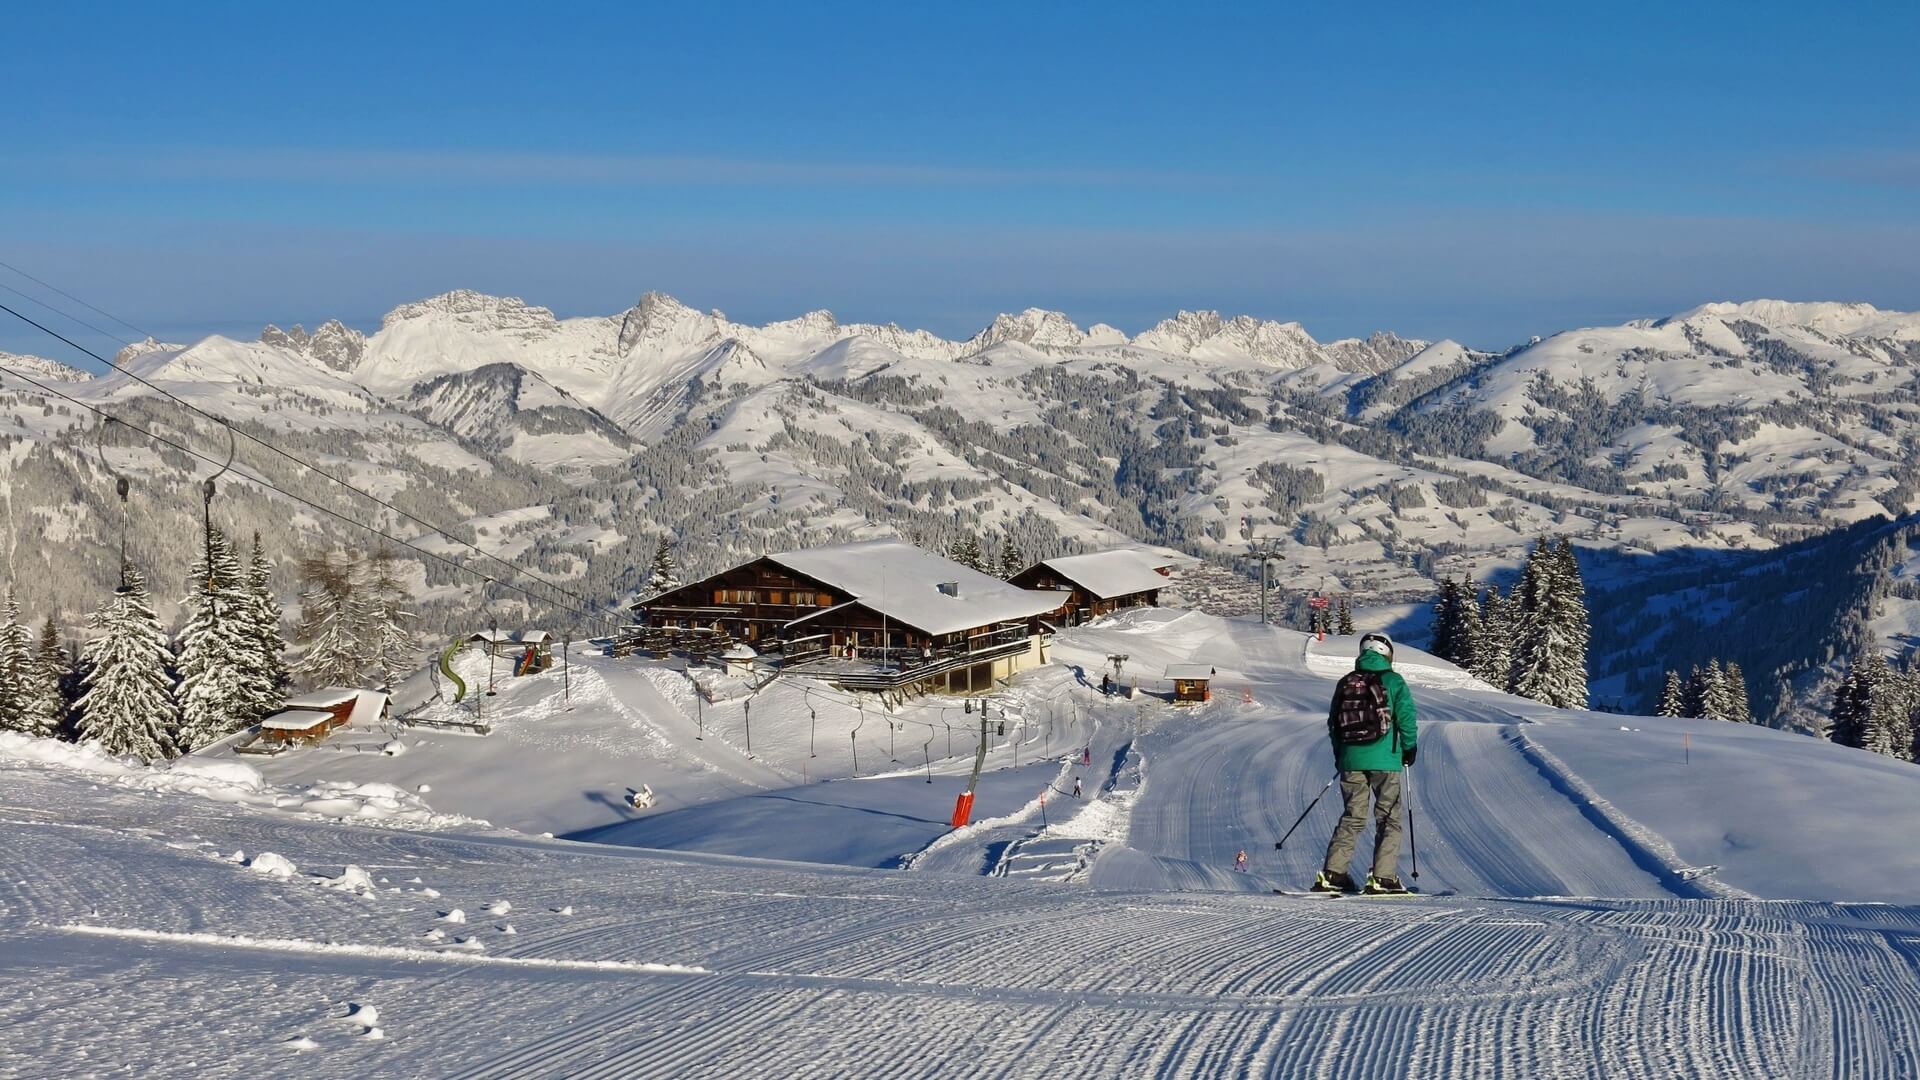 Stazione superiore della stazione sciistica di Wispile, Gstaad. Piste da sci e montagne.